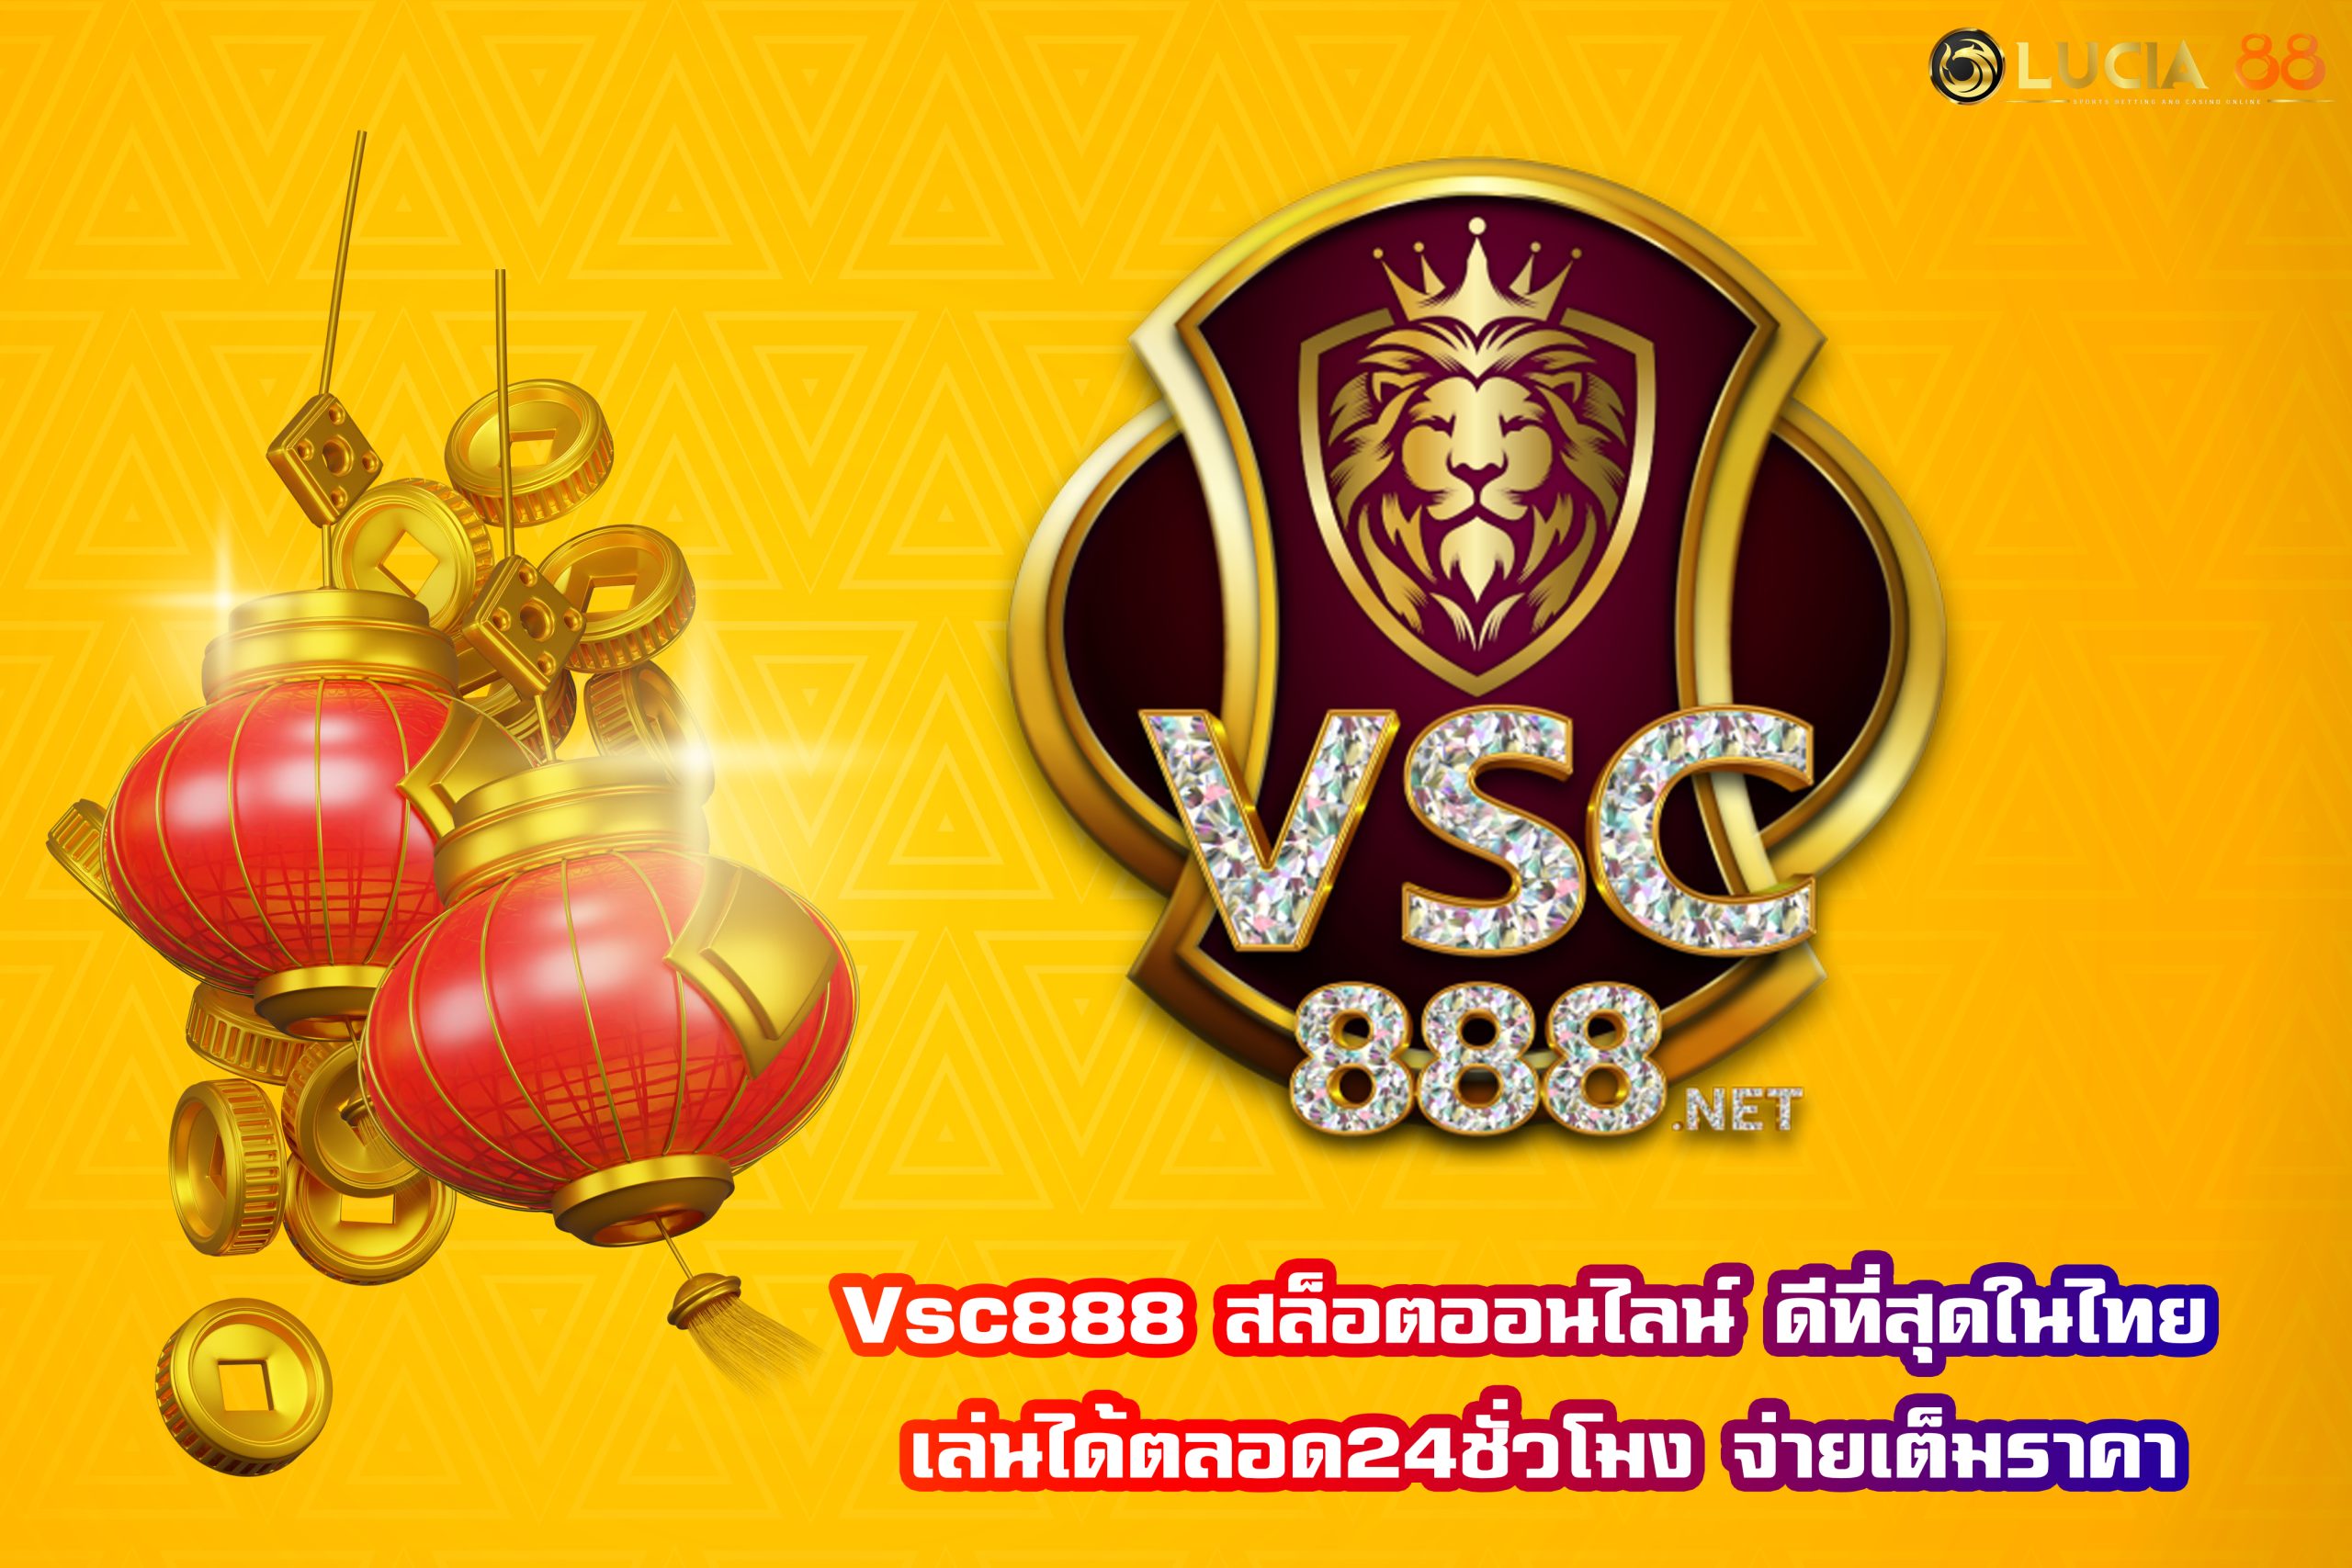 vsc888 สล็อตออนไลน์ ดีที่สุดในไทย เล่นได้ตลอด24ชั่วโมง จ่ายเต็มราคา